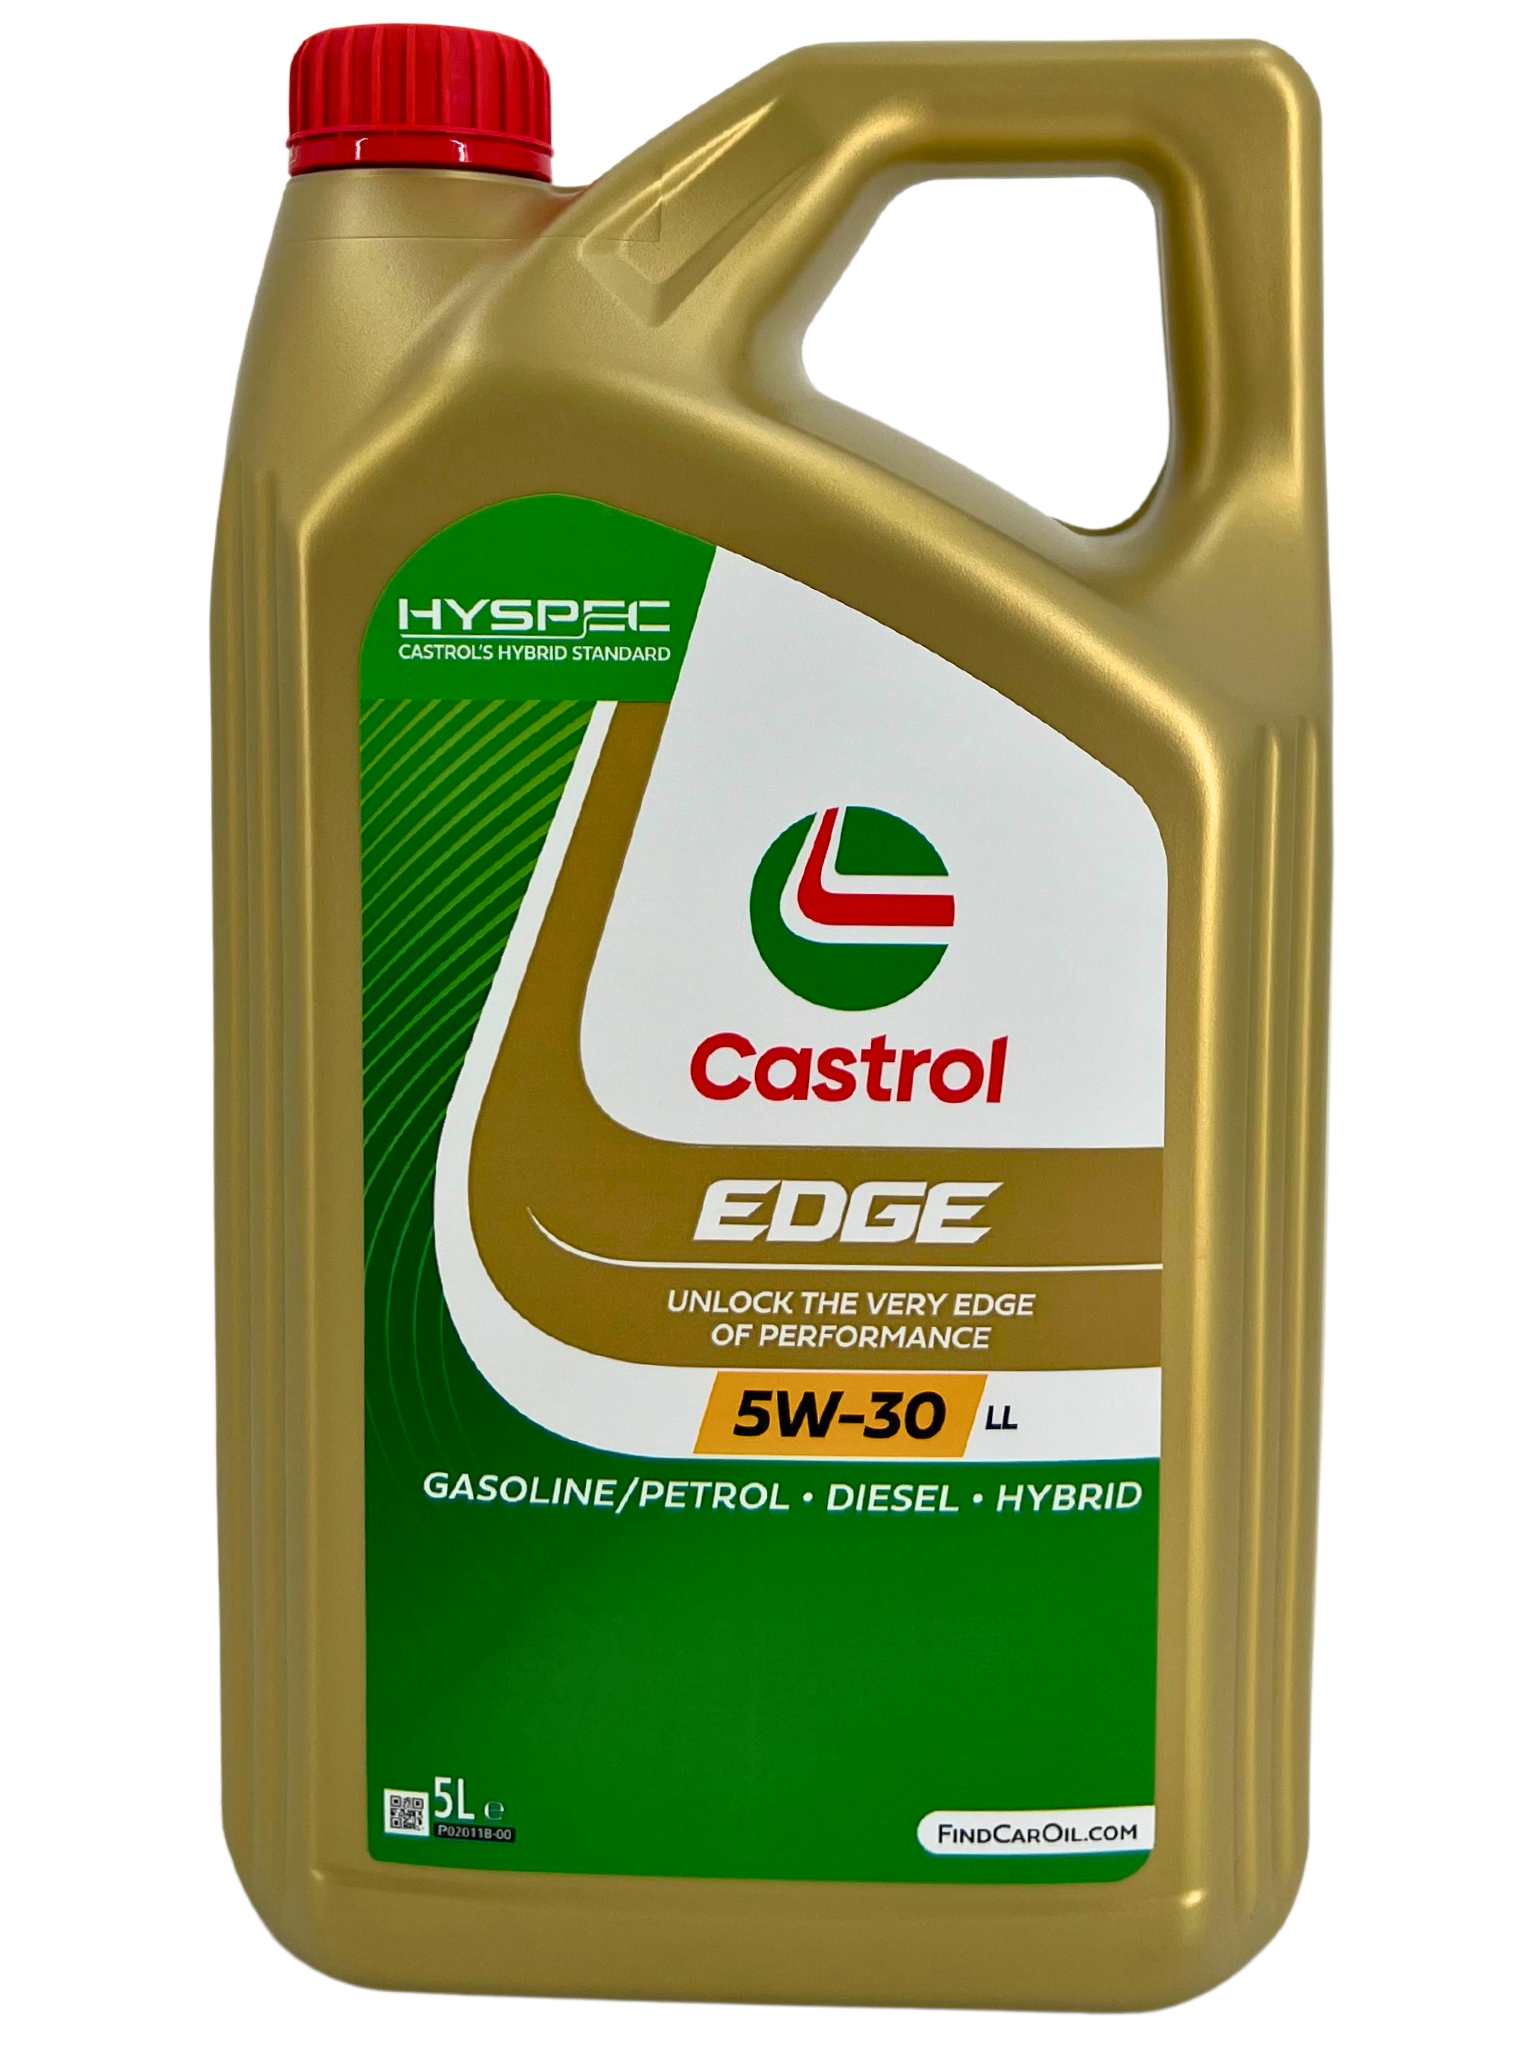 Castrol EDGE 5W-30 LL 5 Liter